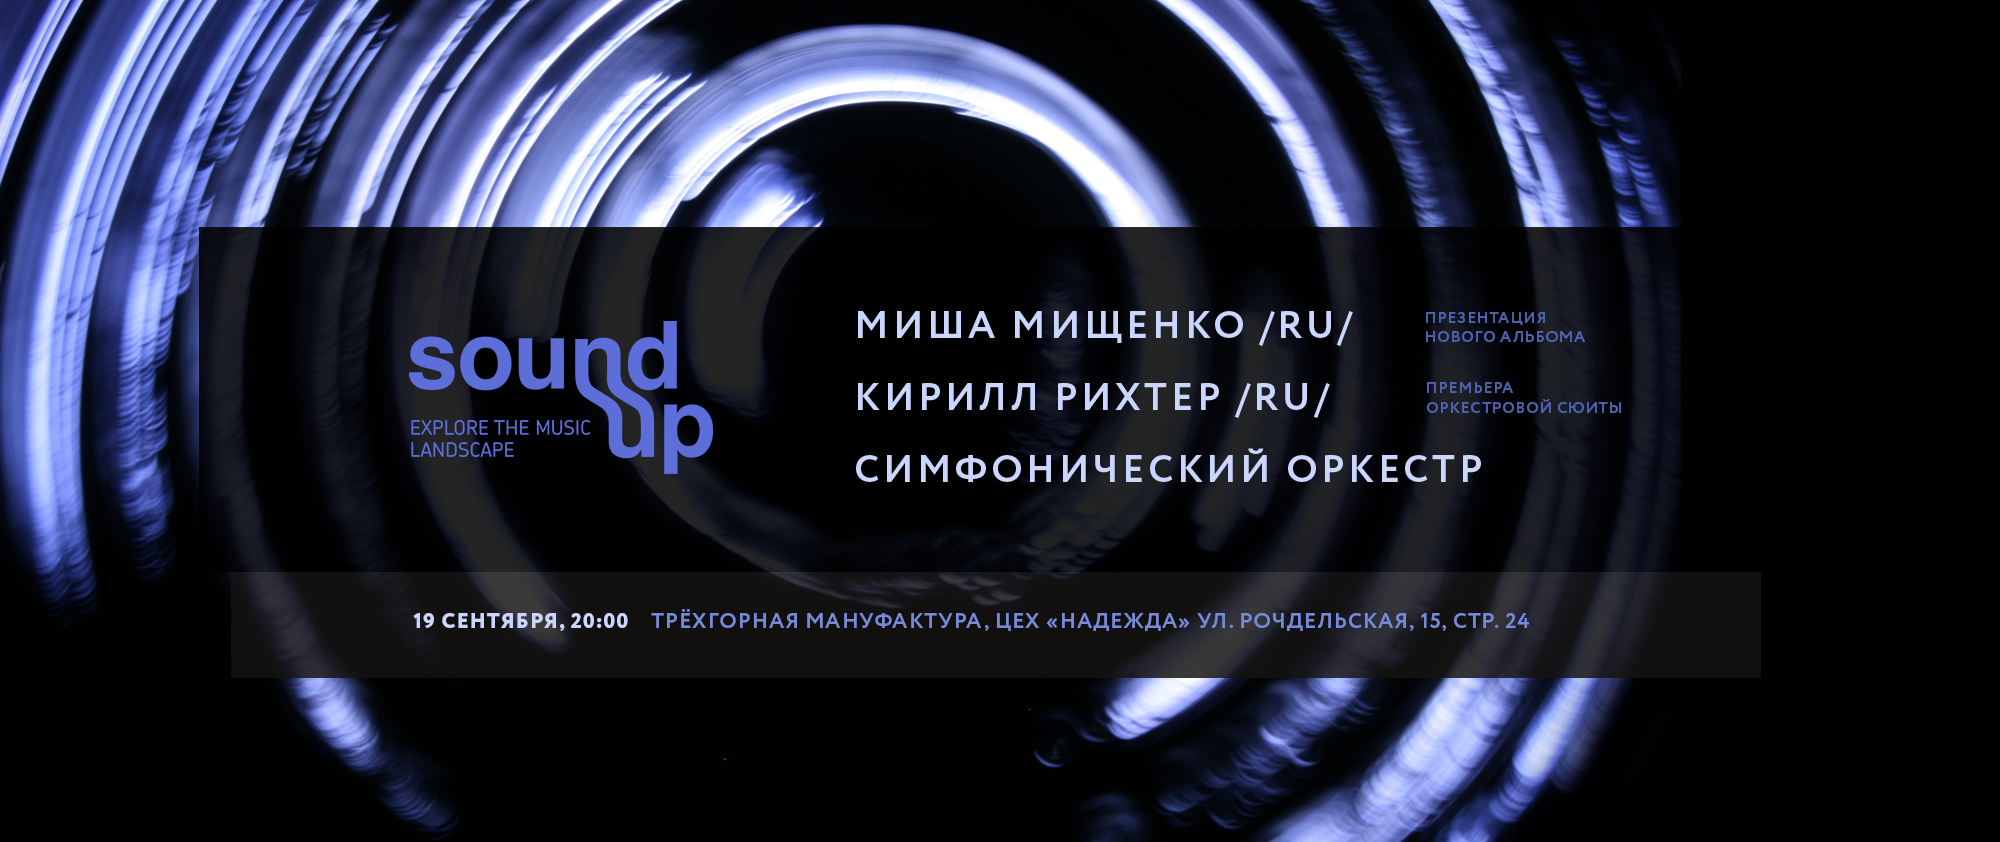 Фестиваль Sound Up представит две мировые симфонические премьеры